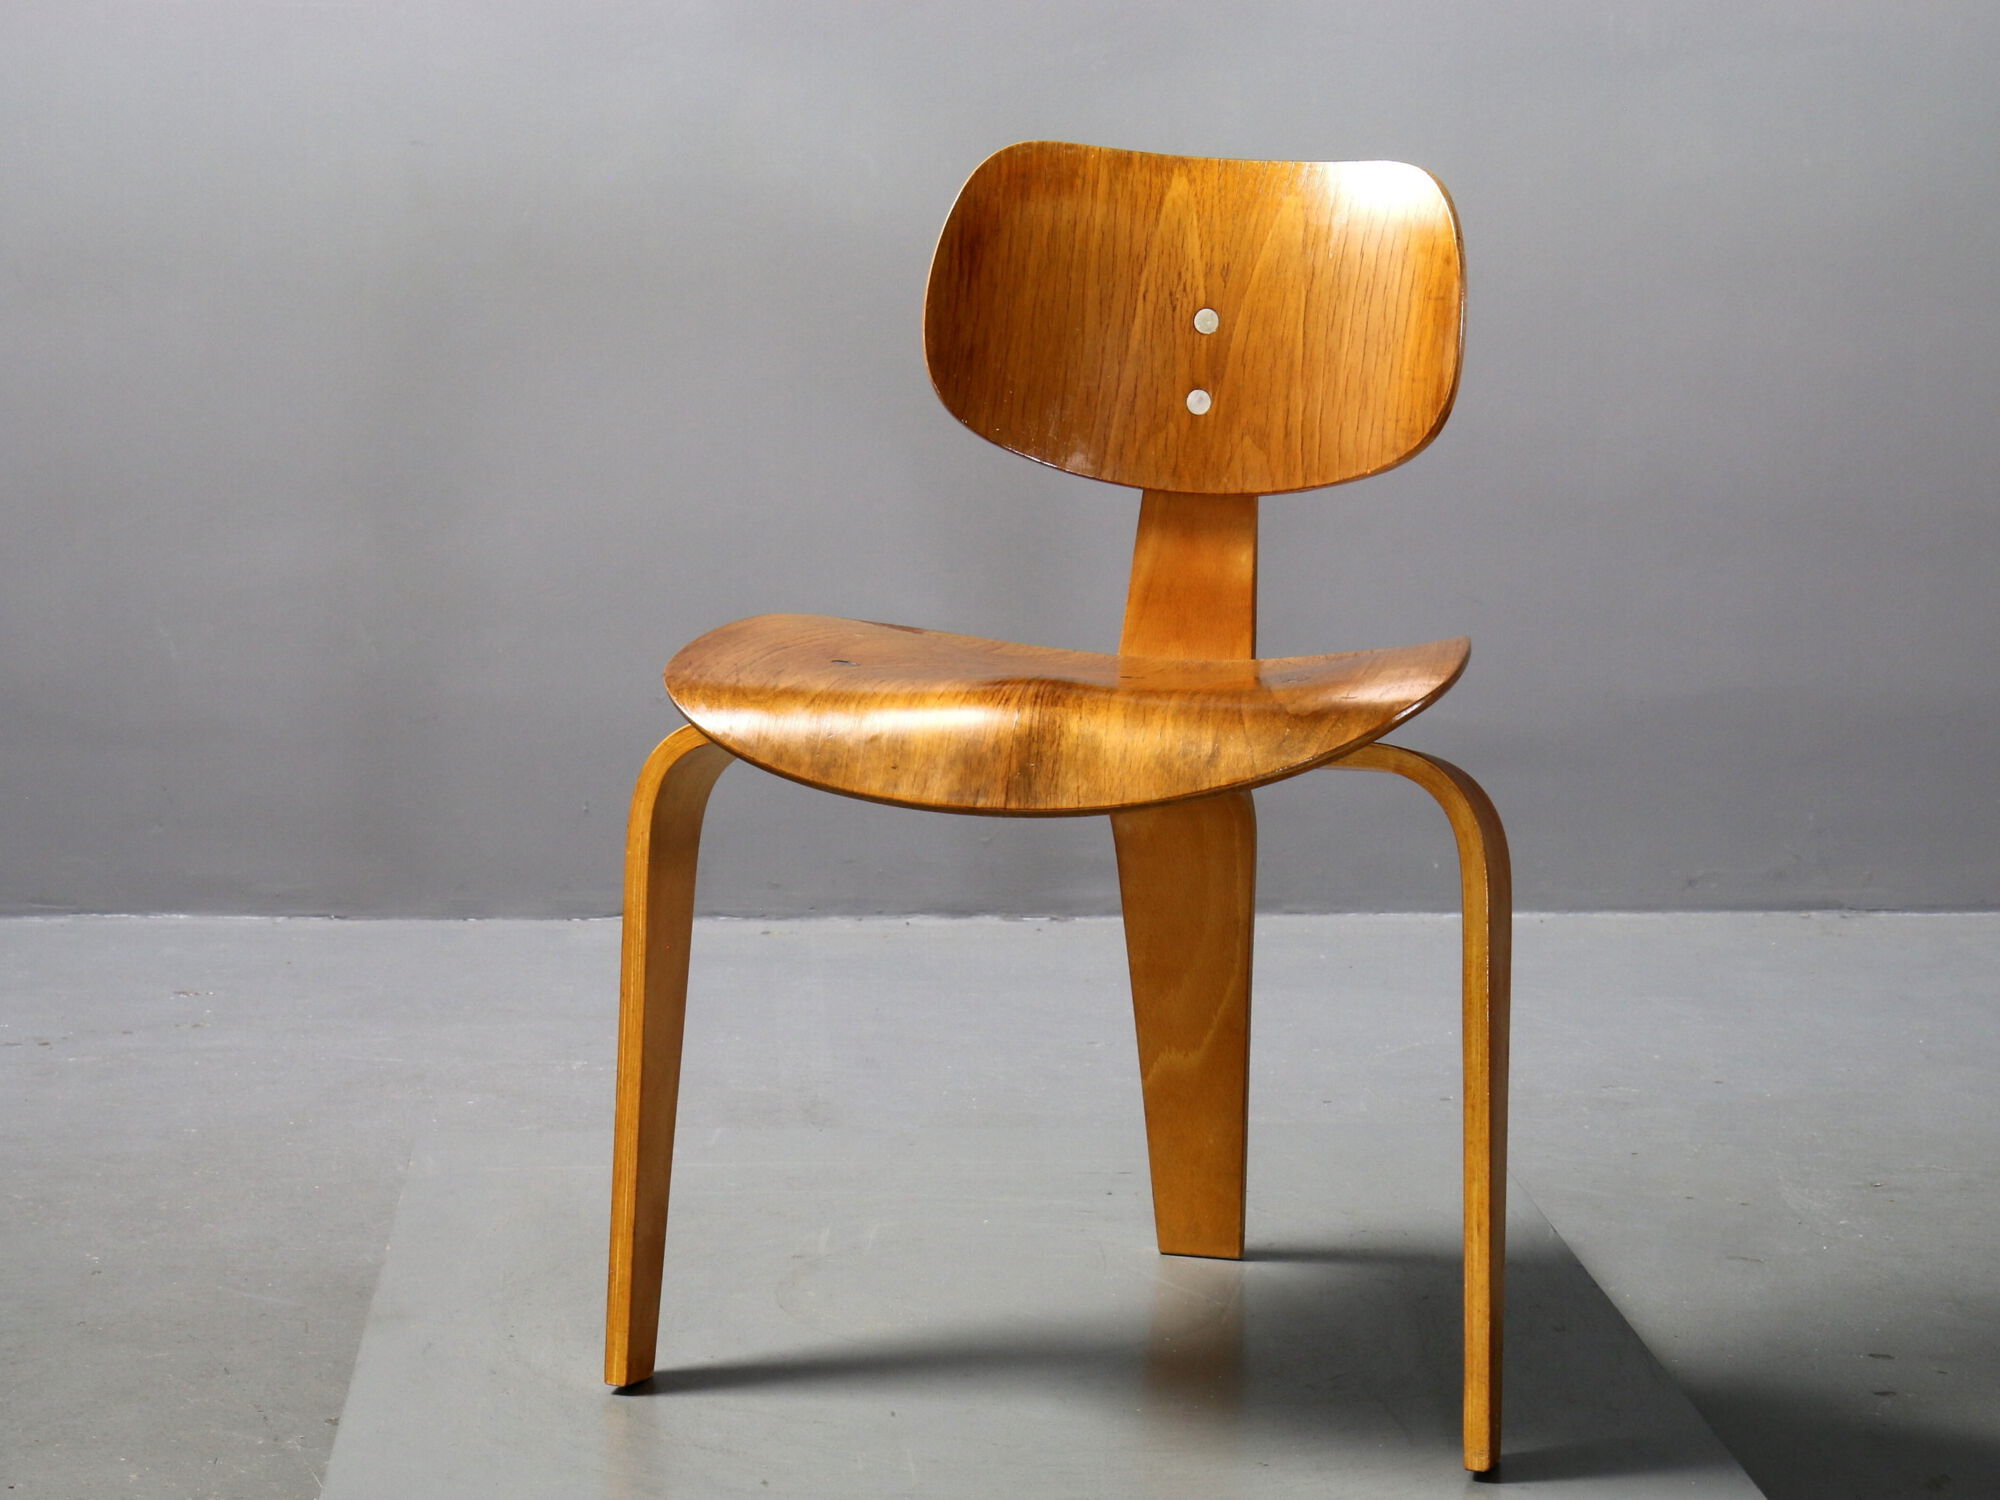 Der Eiermann Stuhl hat eine naturfarbene Oberfläche mit gebogenen Holzbeinen.